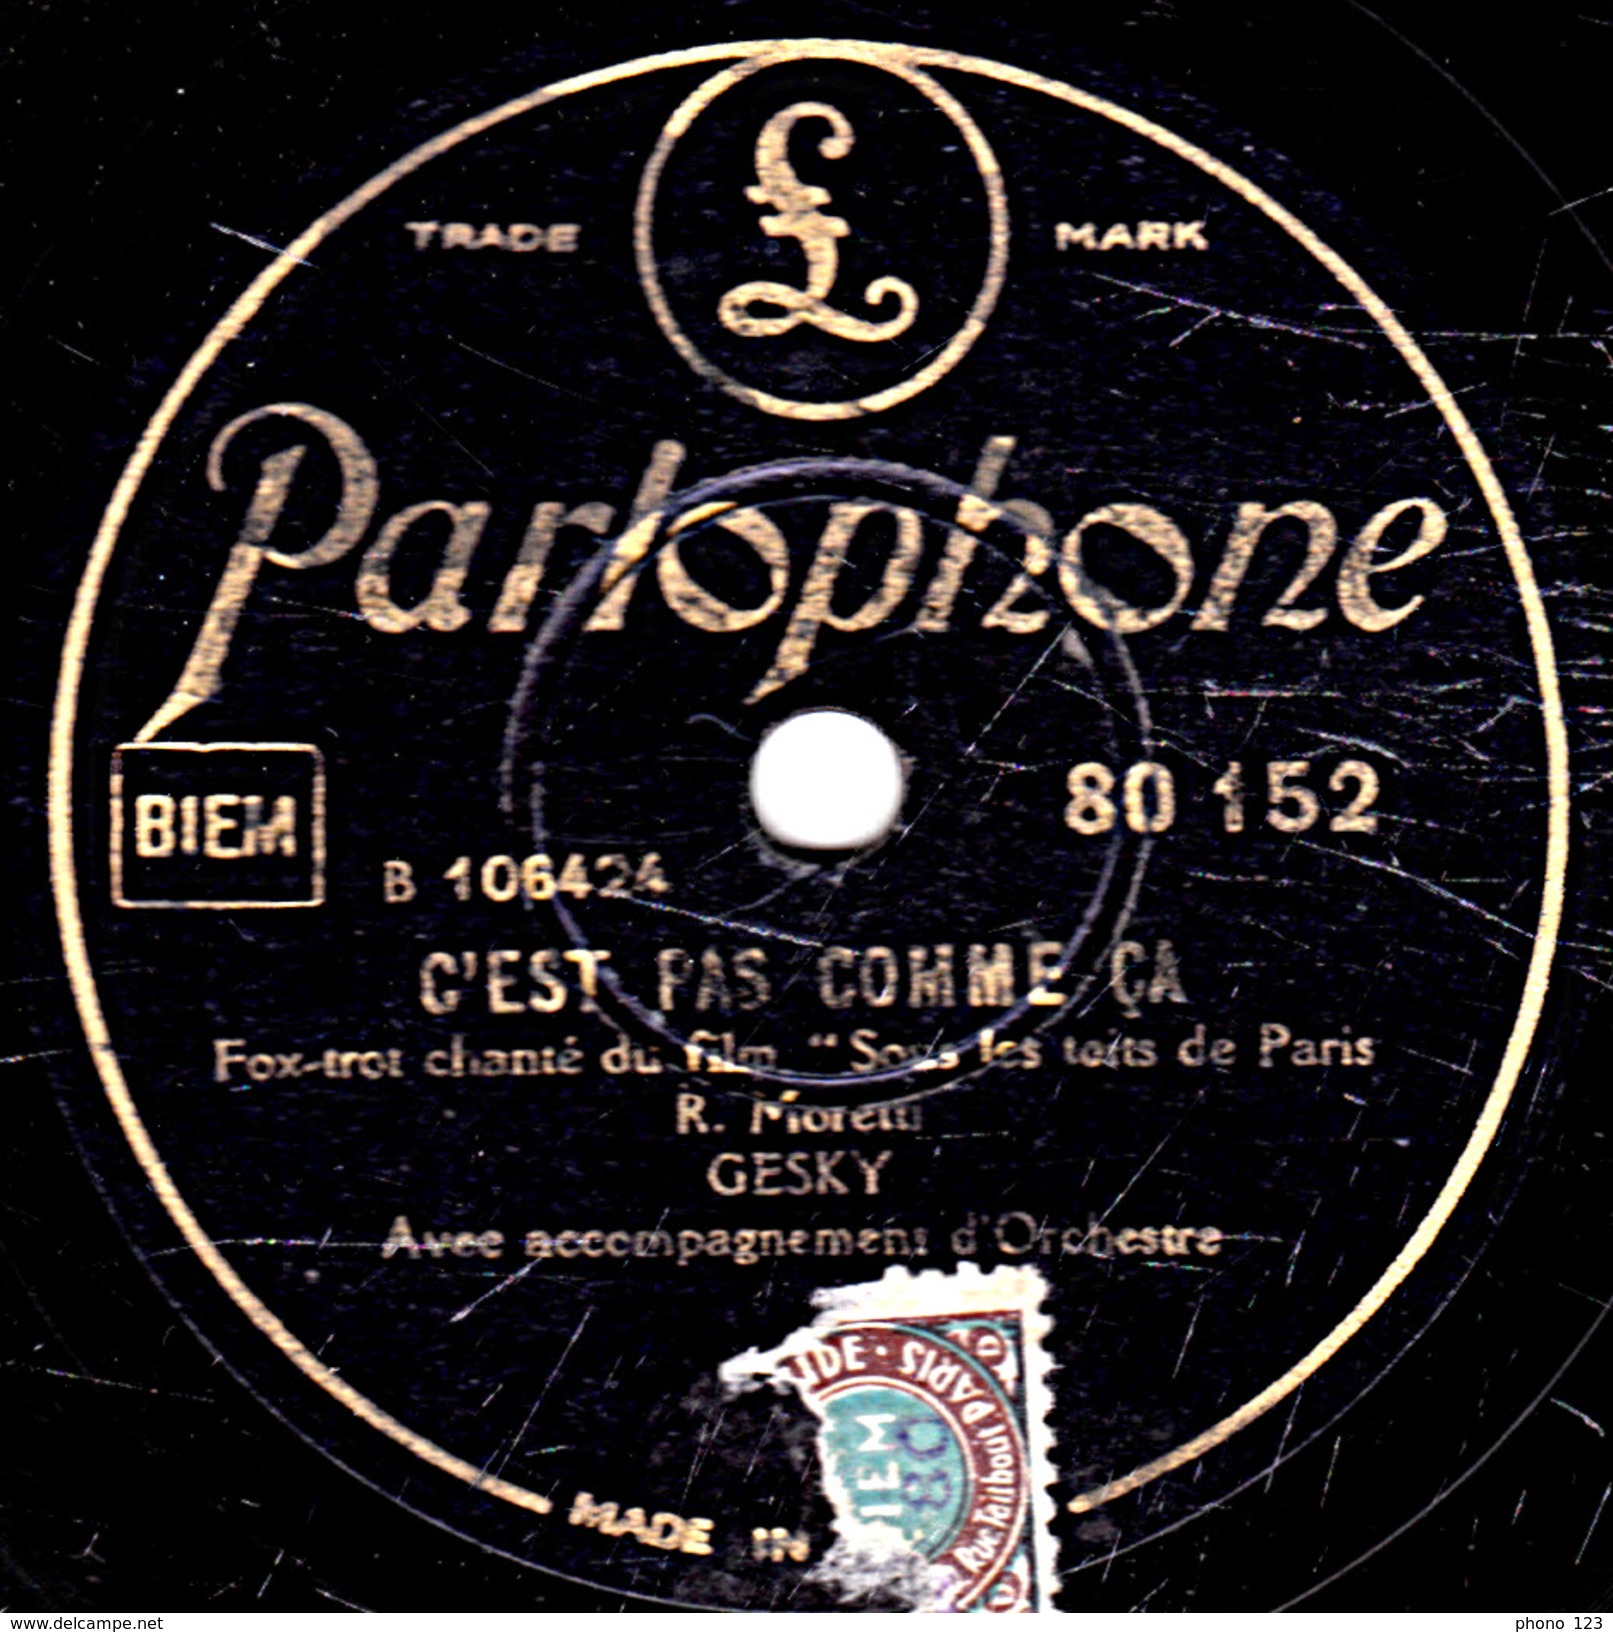 78 T. 25 Cm - état B -  GESKY - SOUS LES TOITS DE PARIS - C'EST PAS COMME CA - 78 T - Disques Pour Gramophone